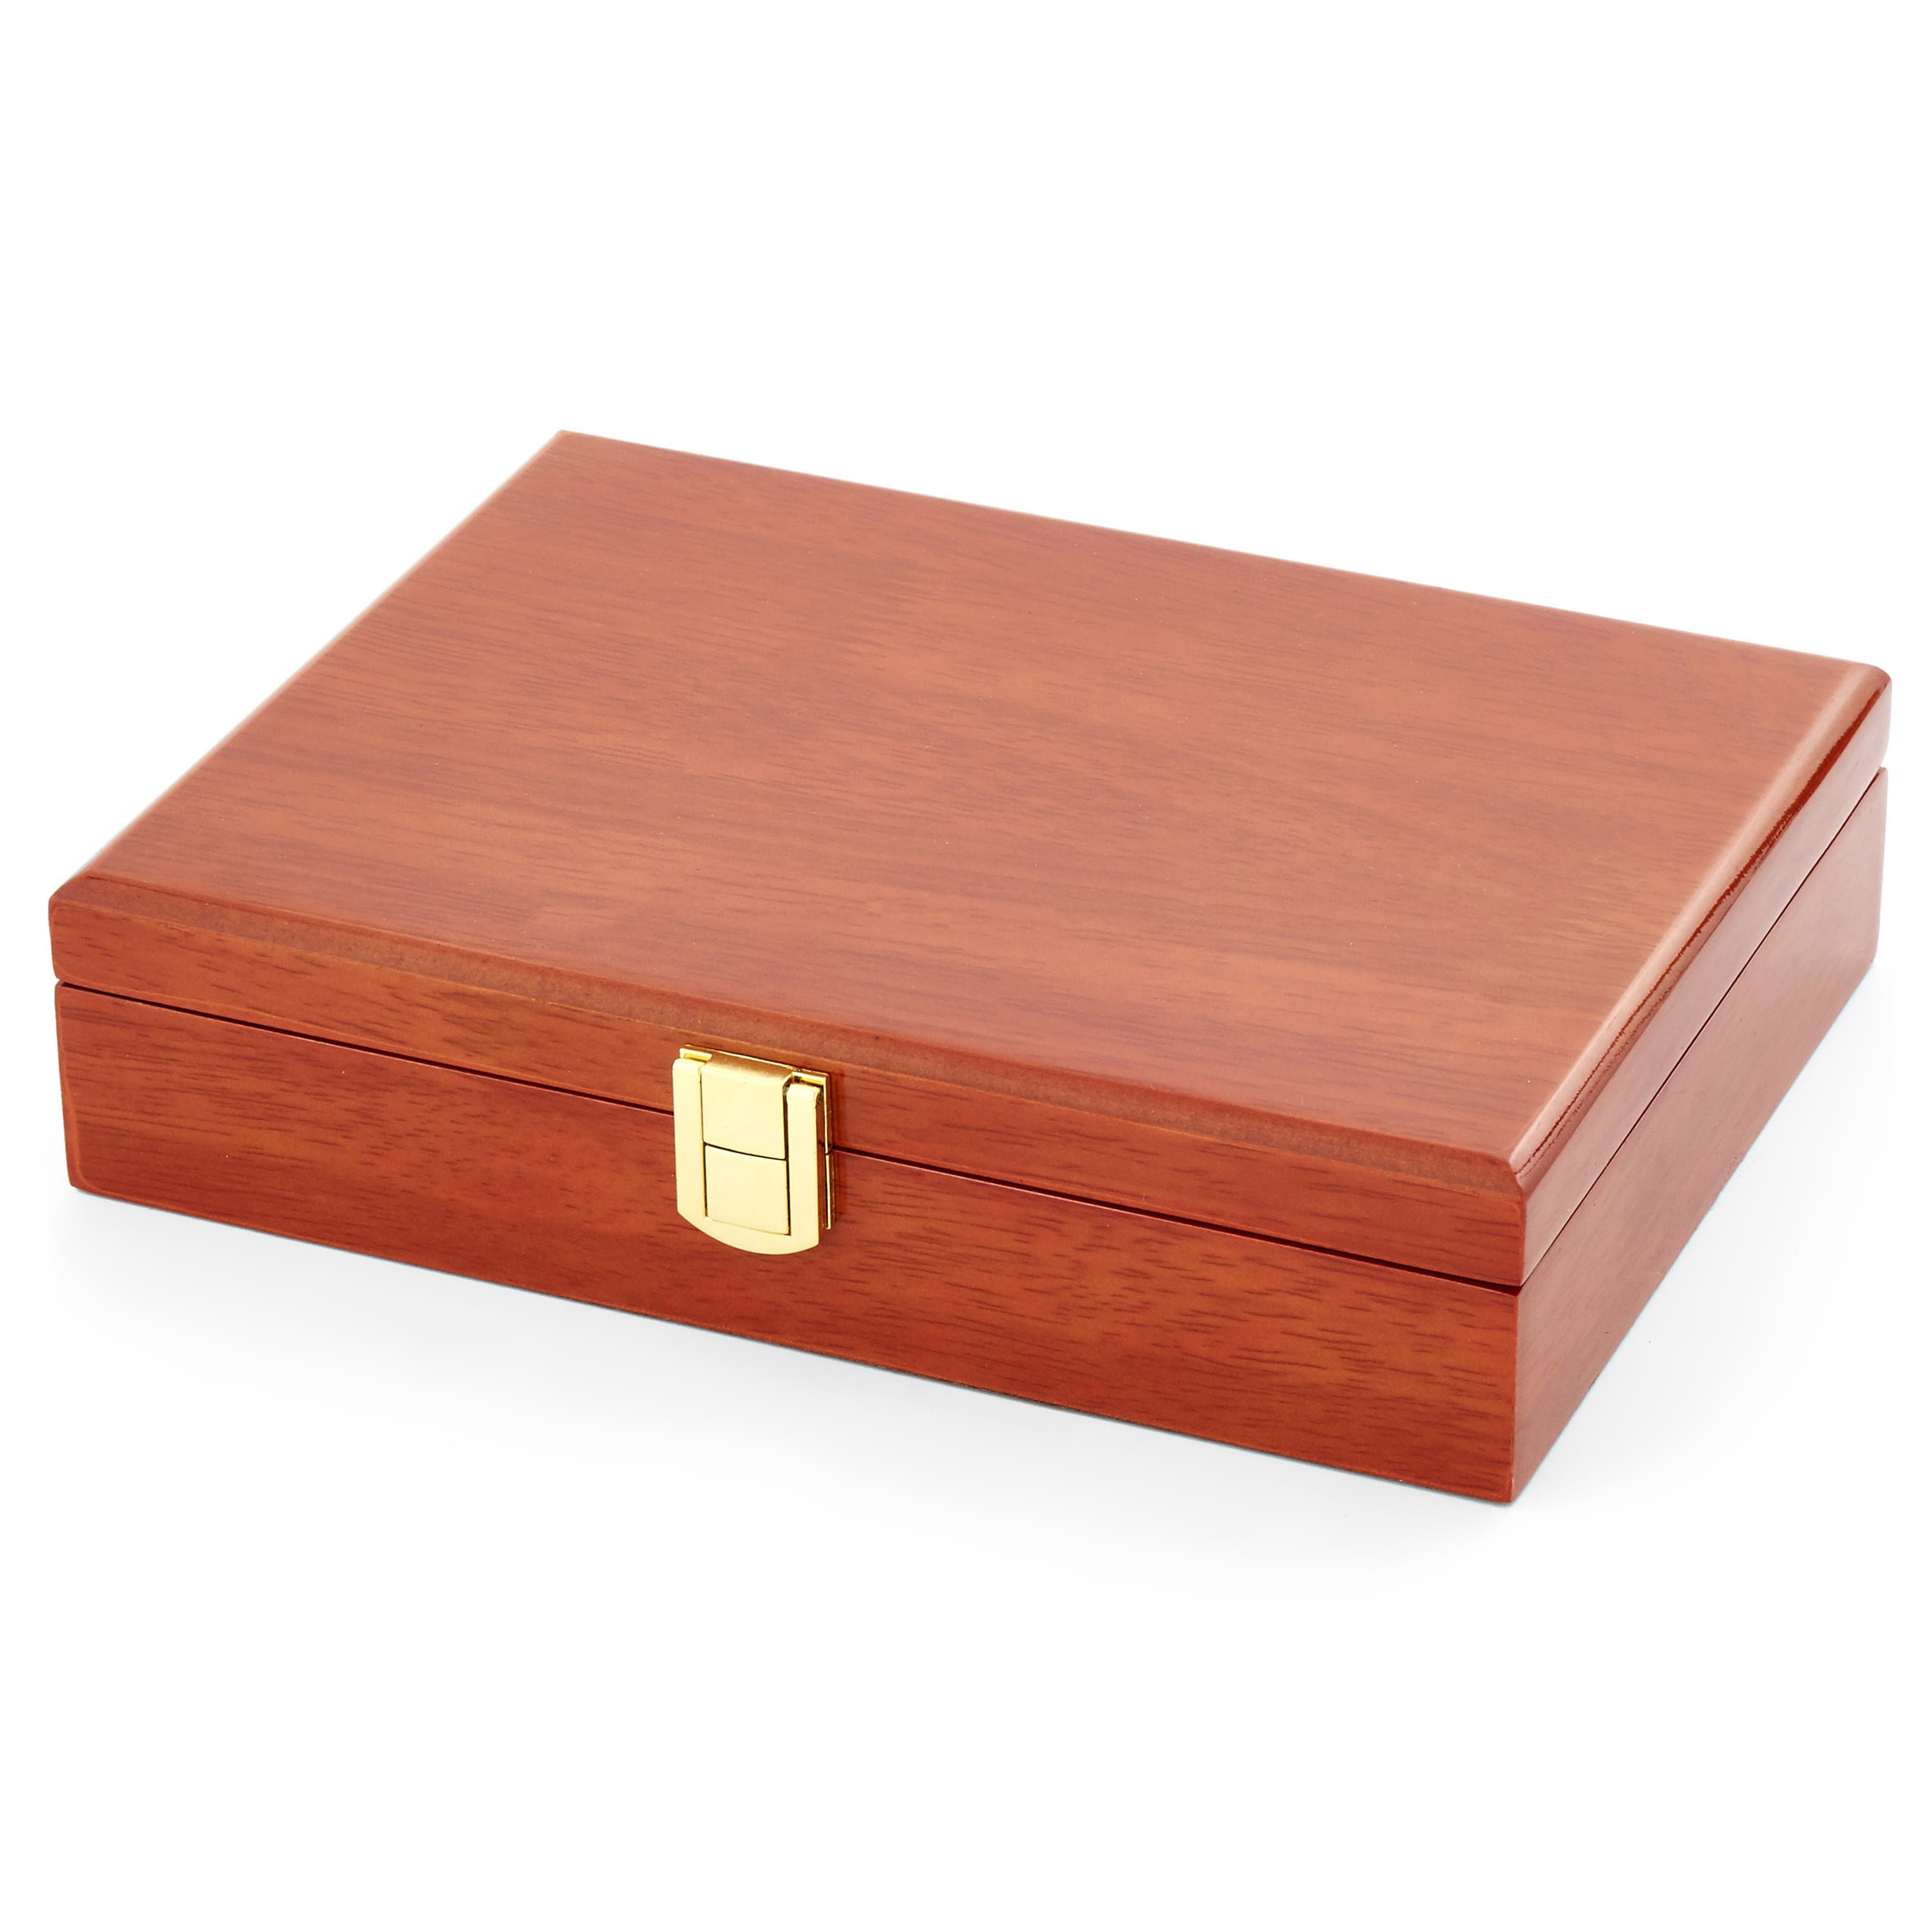 Natural Wood Cognac Natural Wood Cufflinks Box For 20 Cufflinks Sets